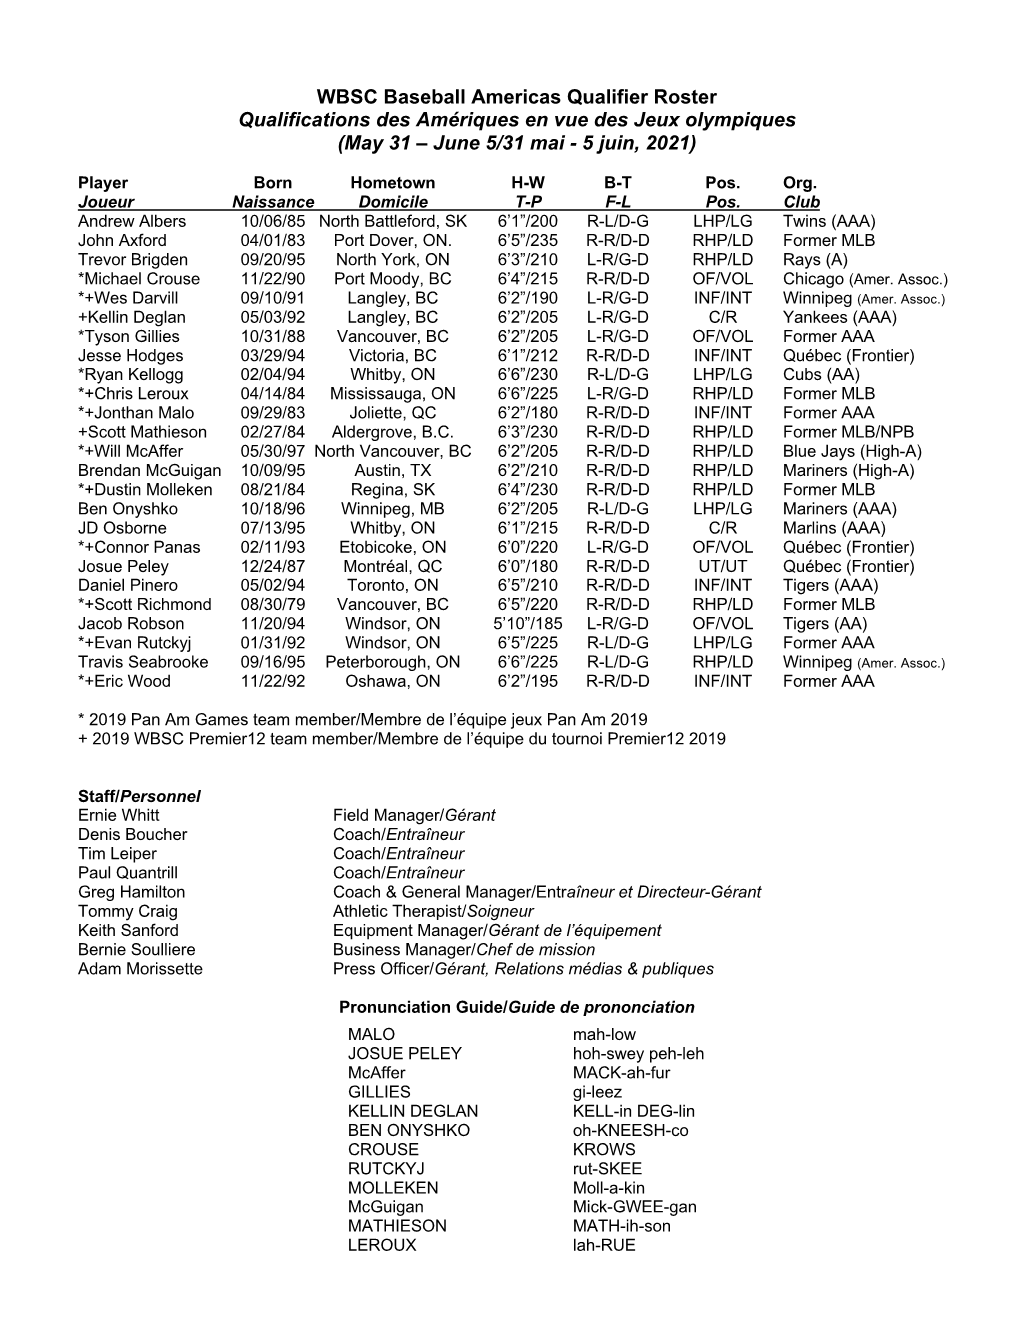 WBSC Baseball Americas Qualifier Roster Qualifications Des Amériques En Vue Des Jeux Olympiques (May 31 – June 5/31 Mai - 5 Juin, 2021)